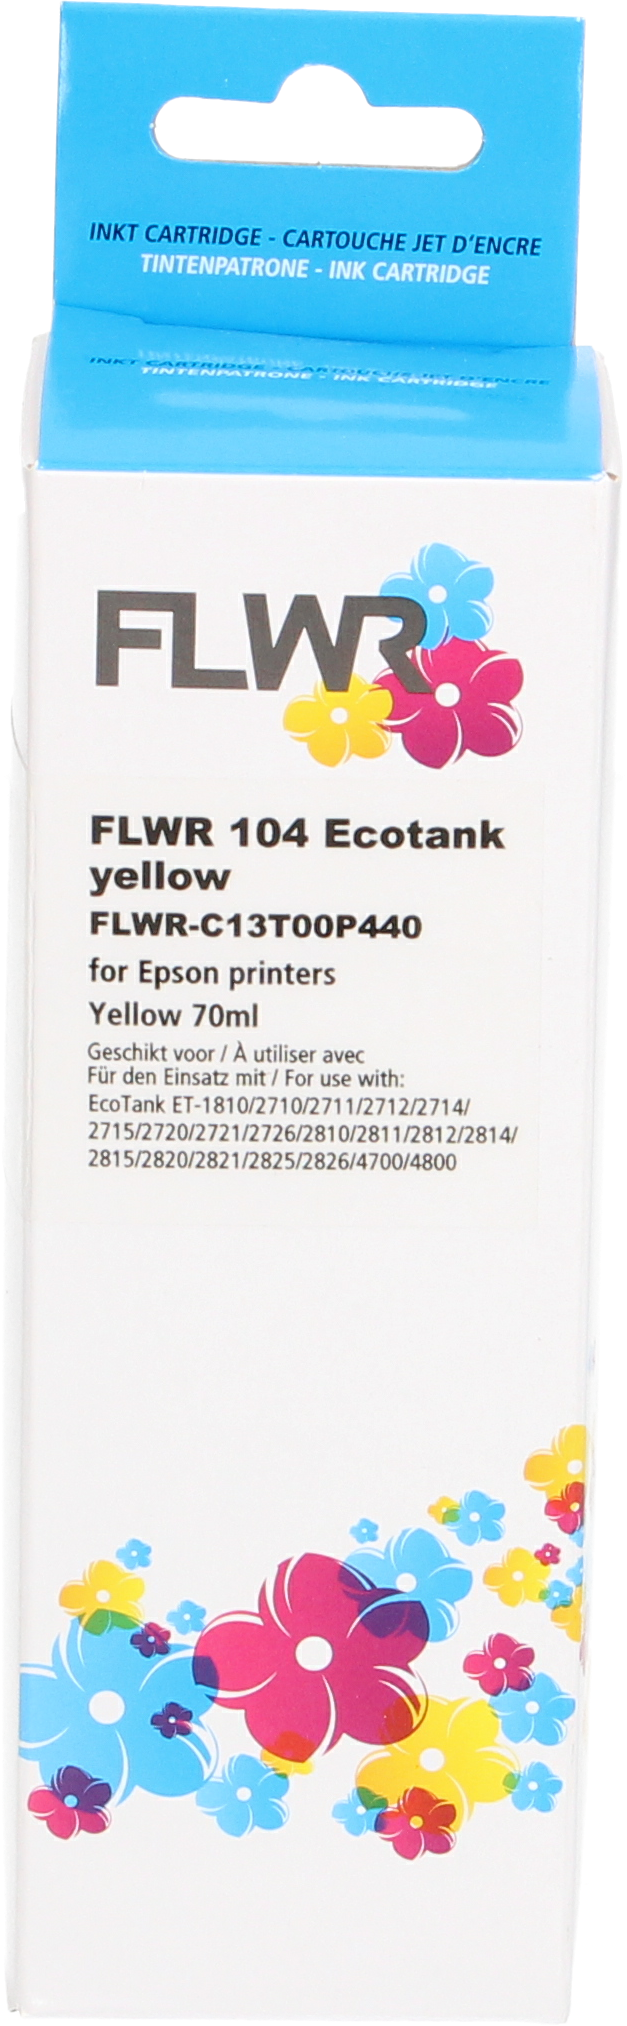 FLWR Epson 104 Ecotank geel